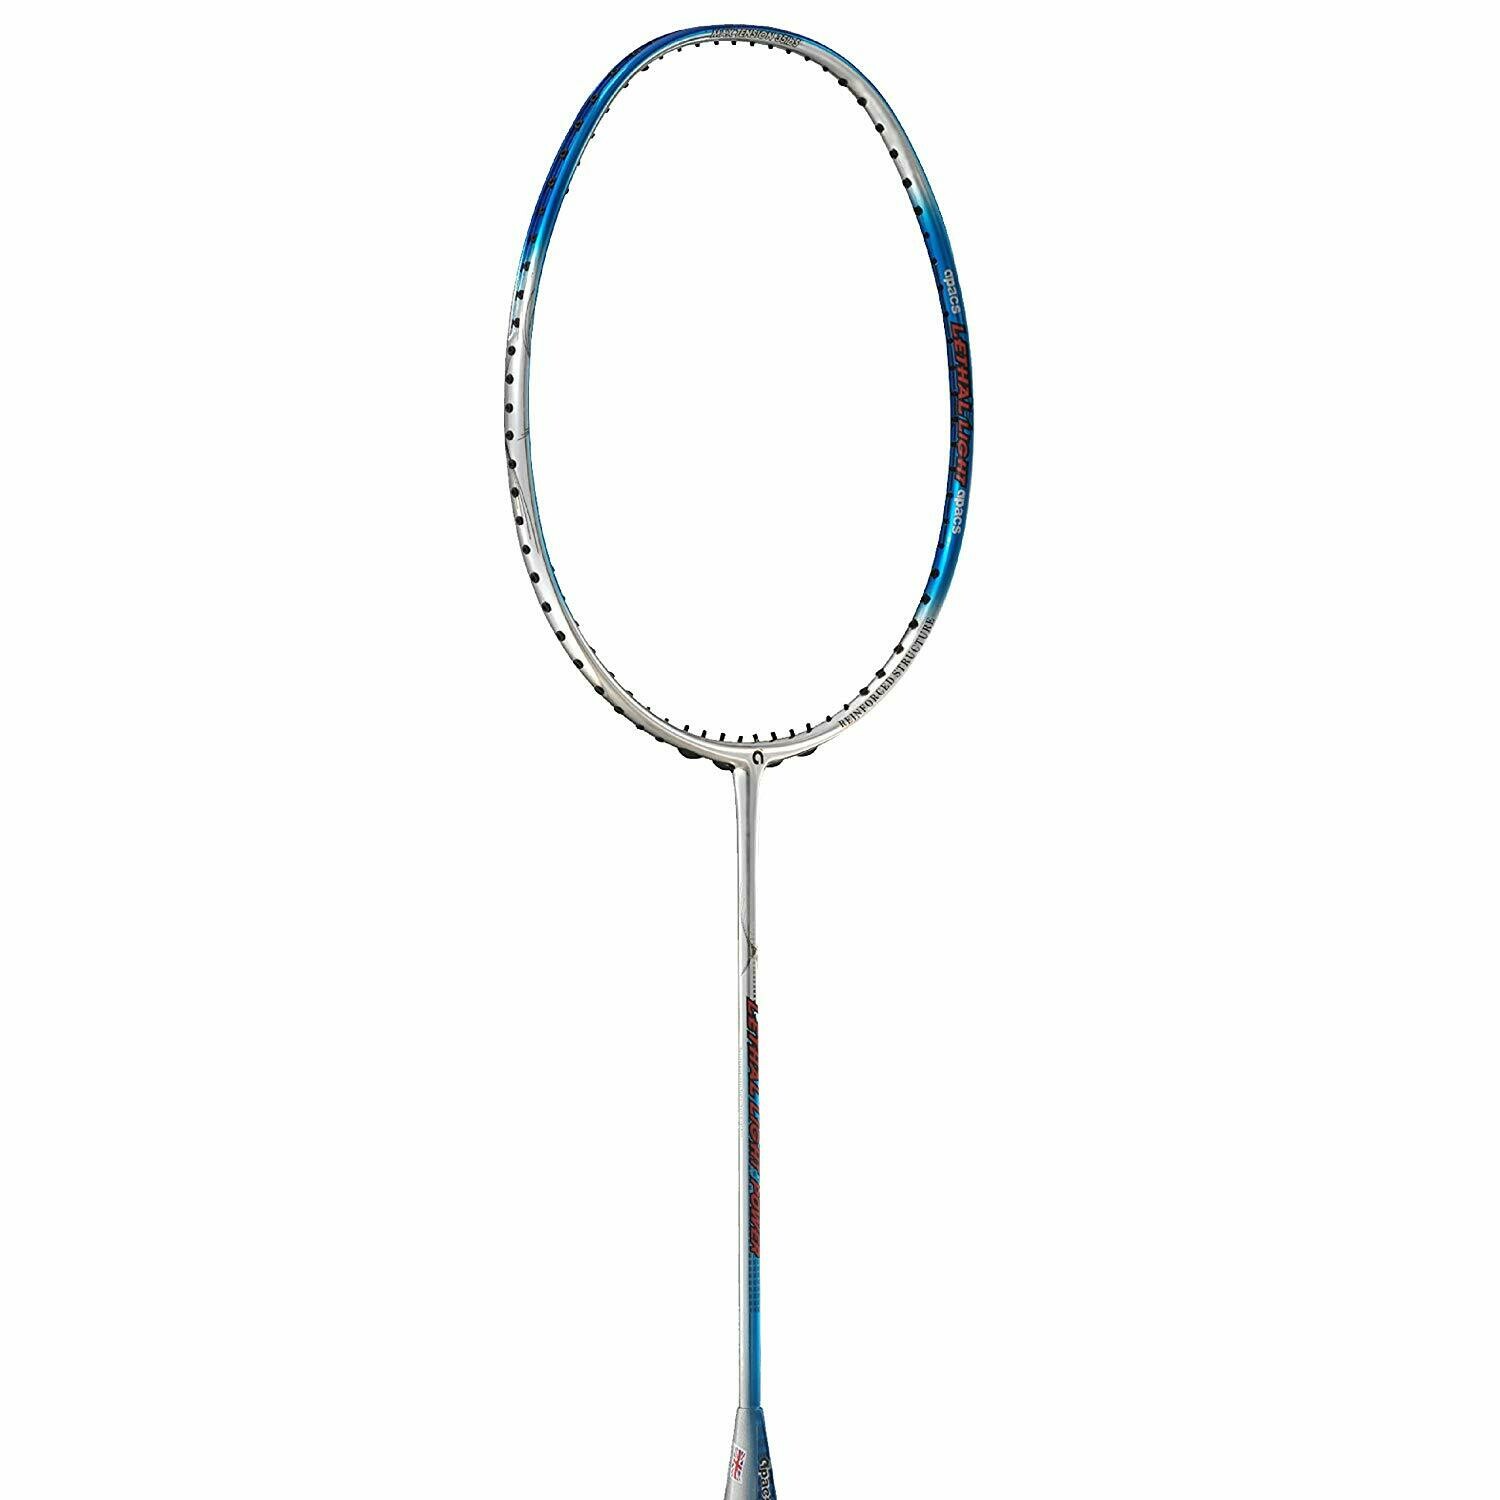 Apacs Lethal Light Power Unstrung Badminton Racquet